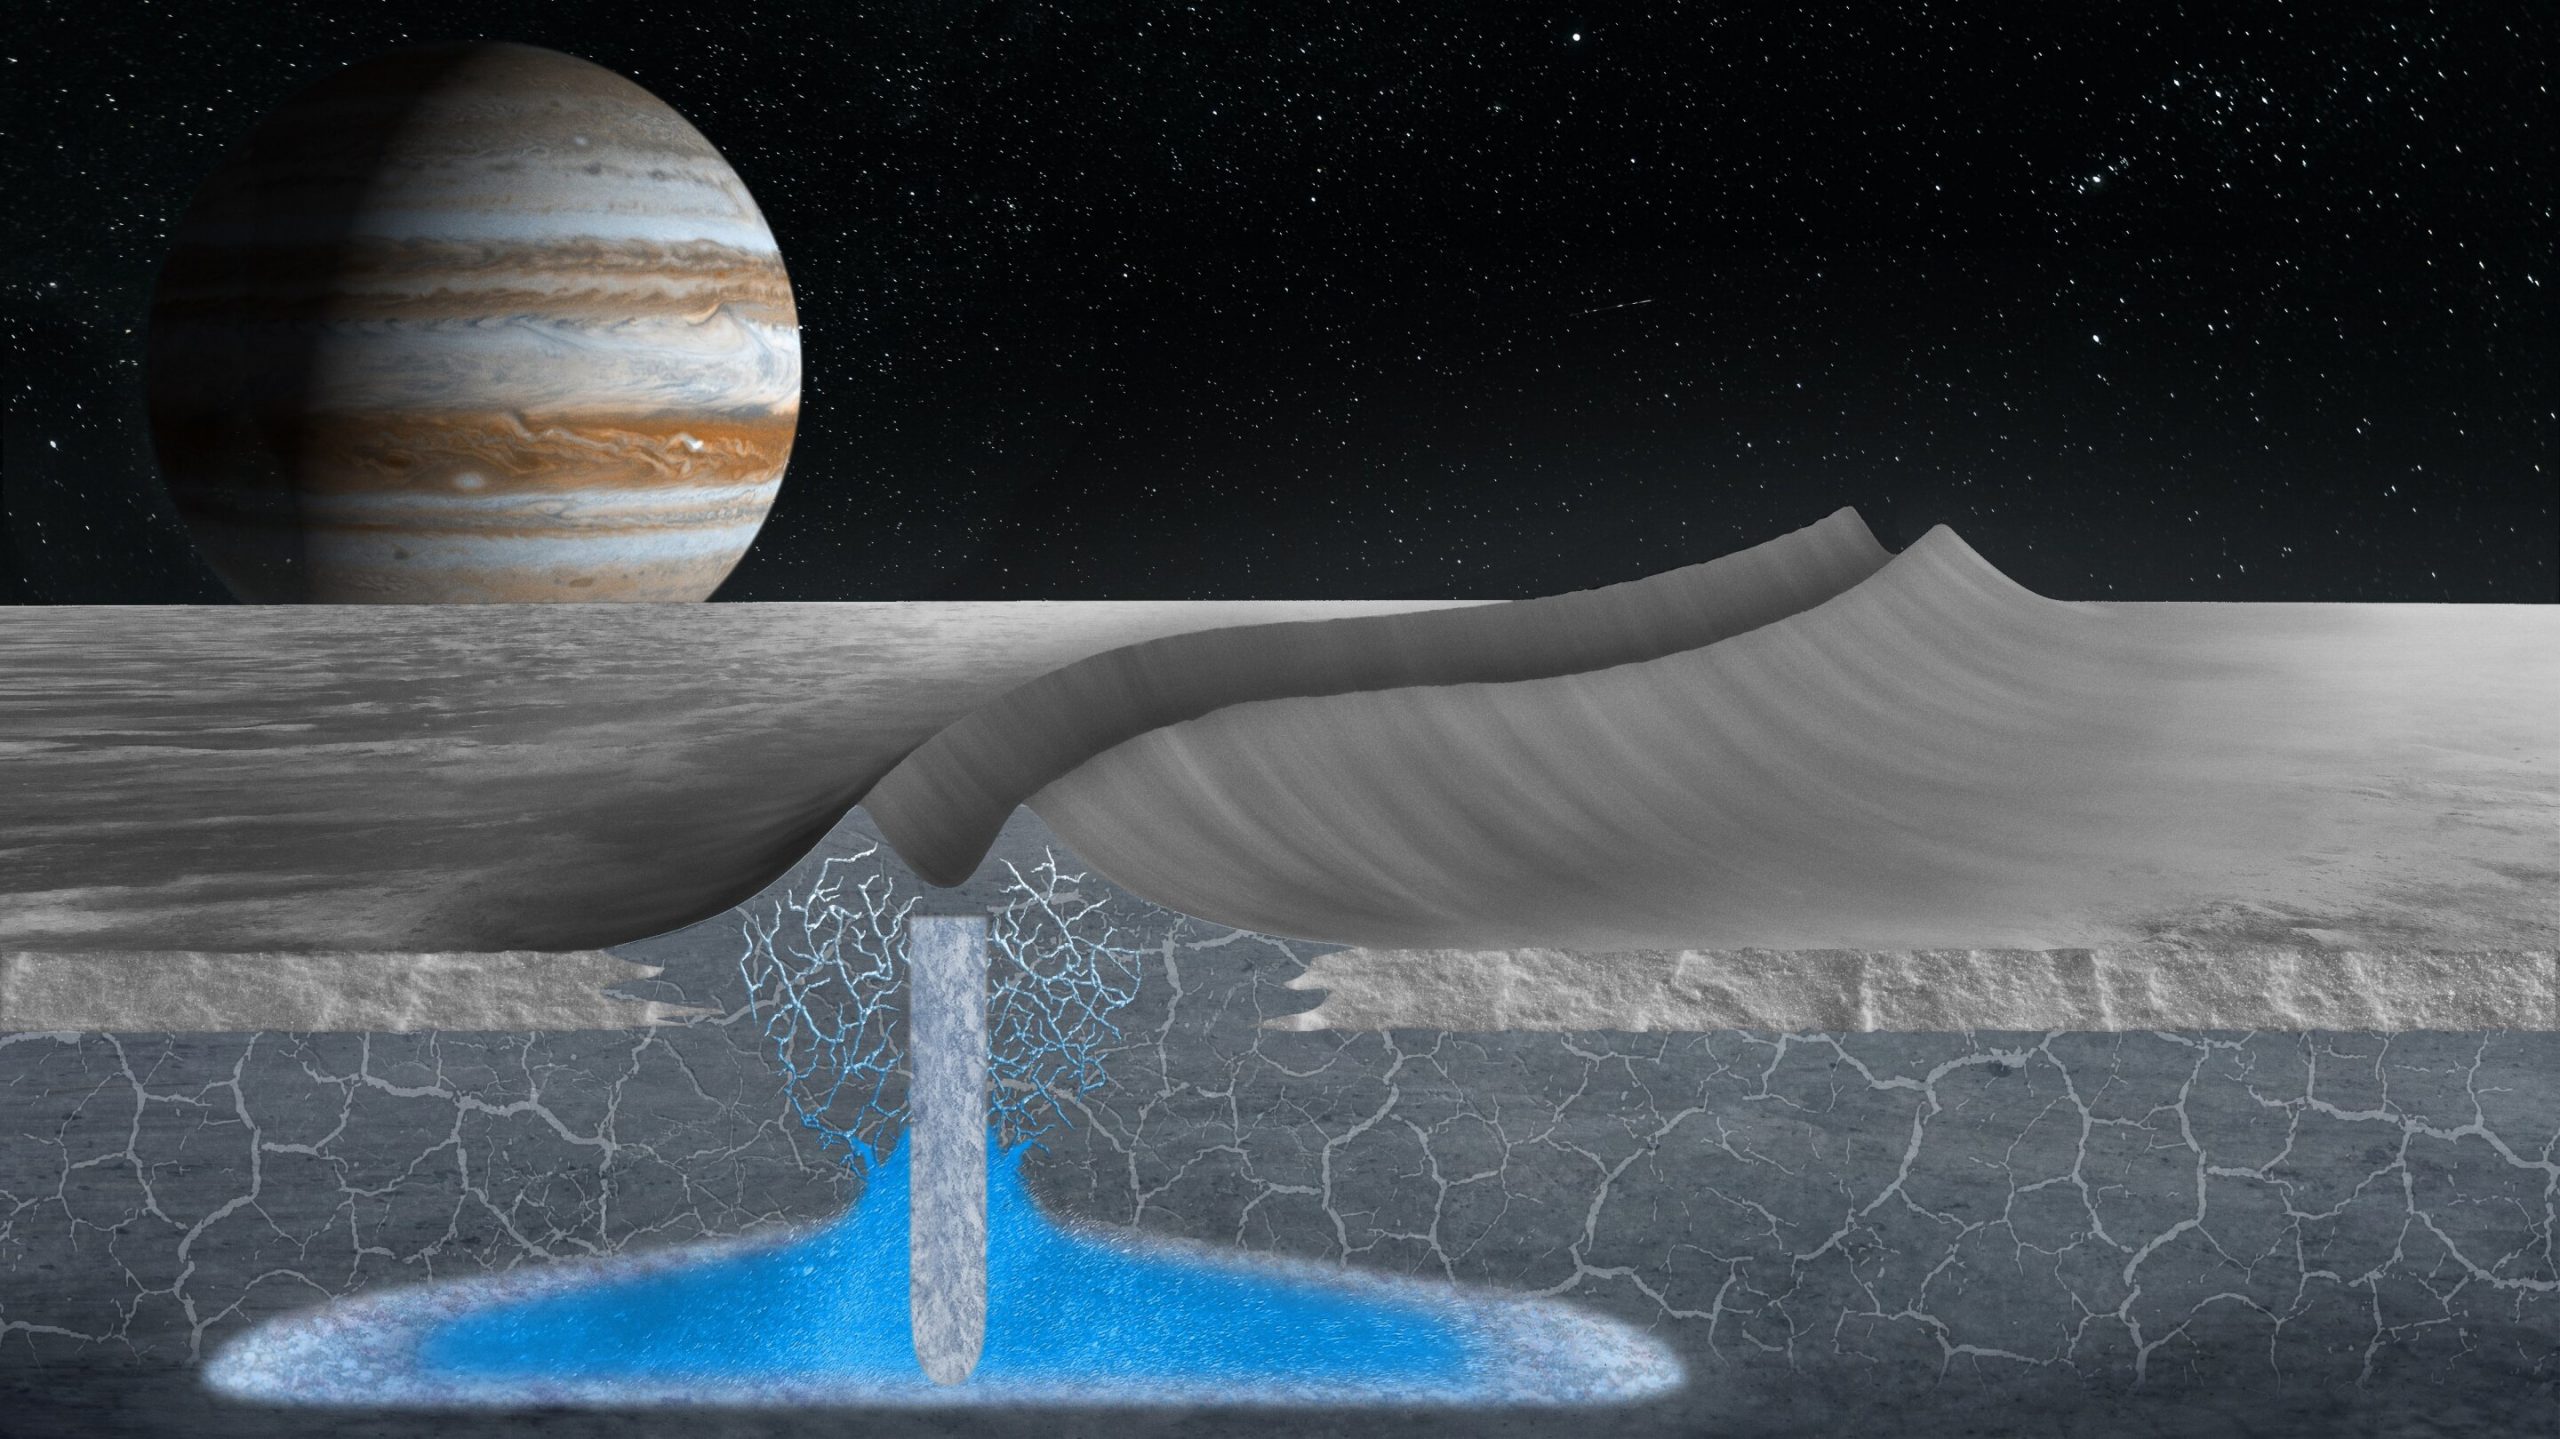 Невероятное сходство между Луной Юпитера Европой и Землей может означать наличие инопланетной жизни